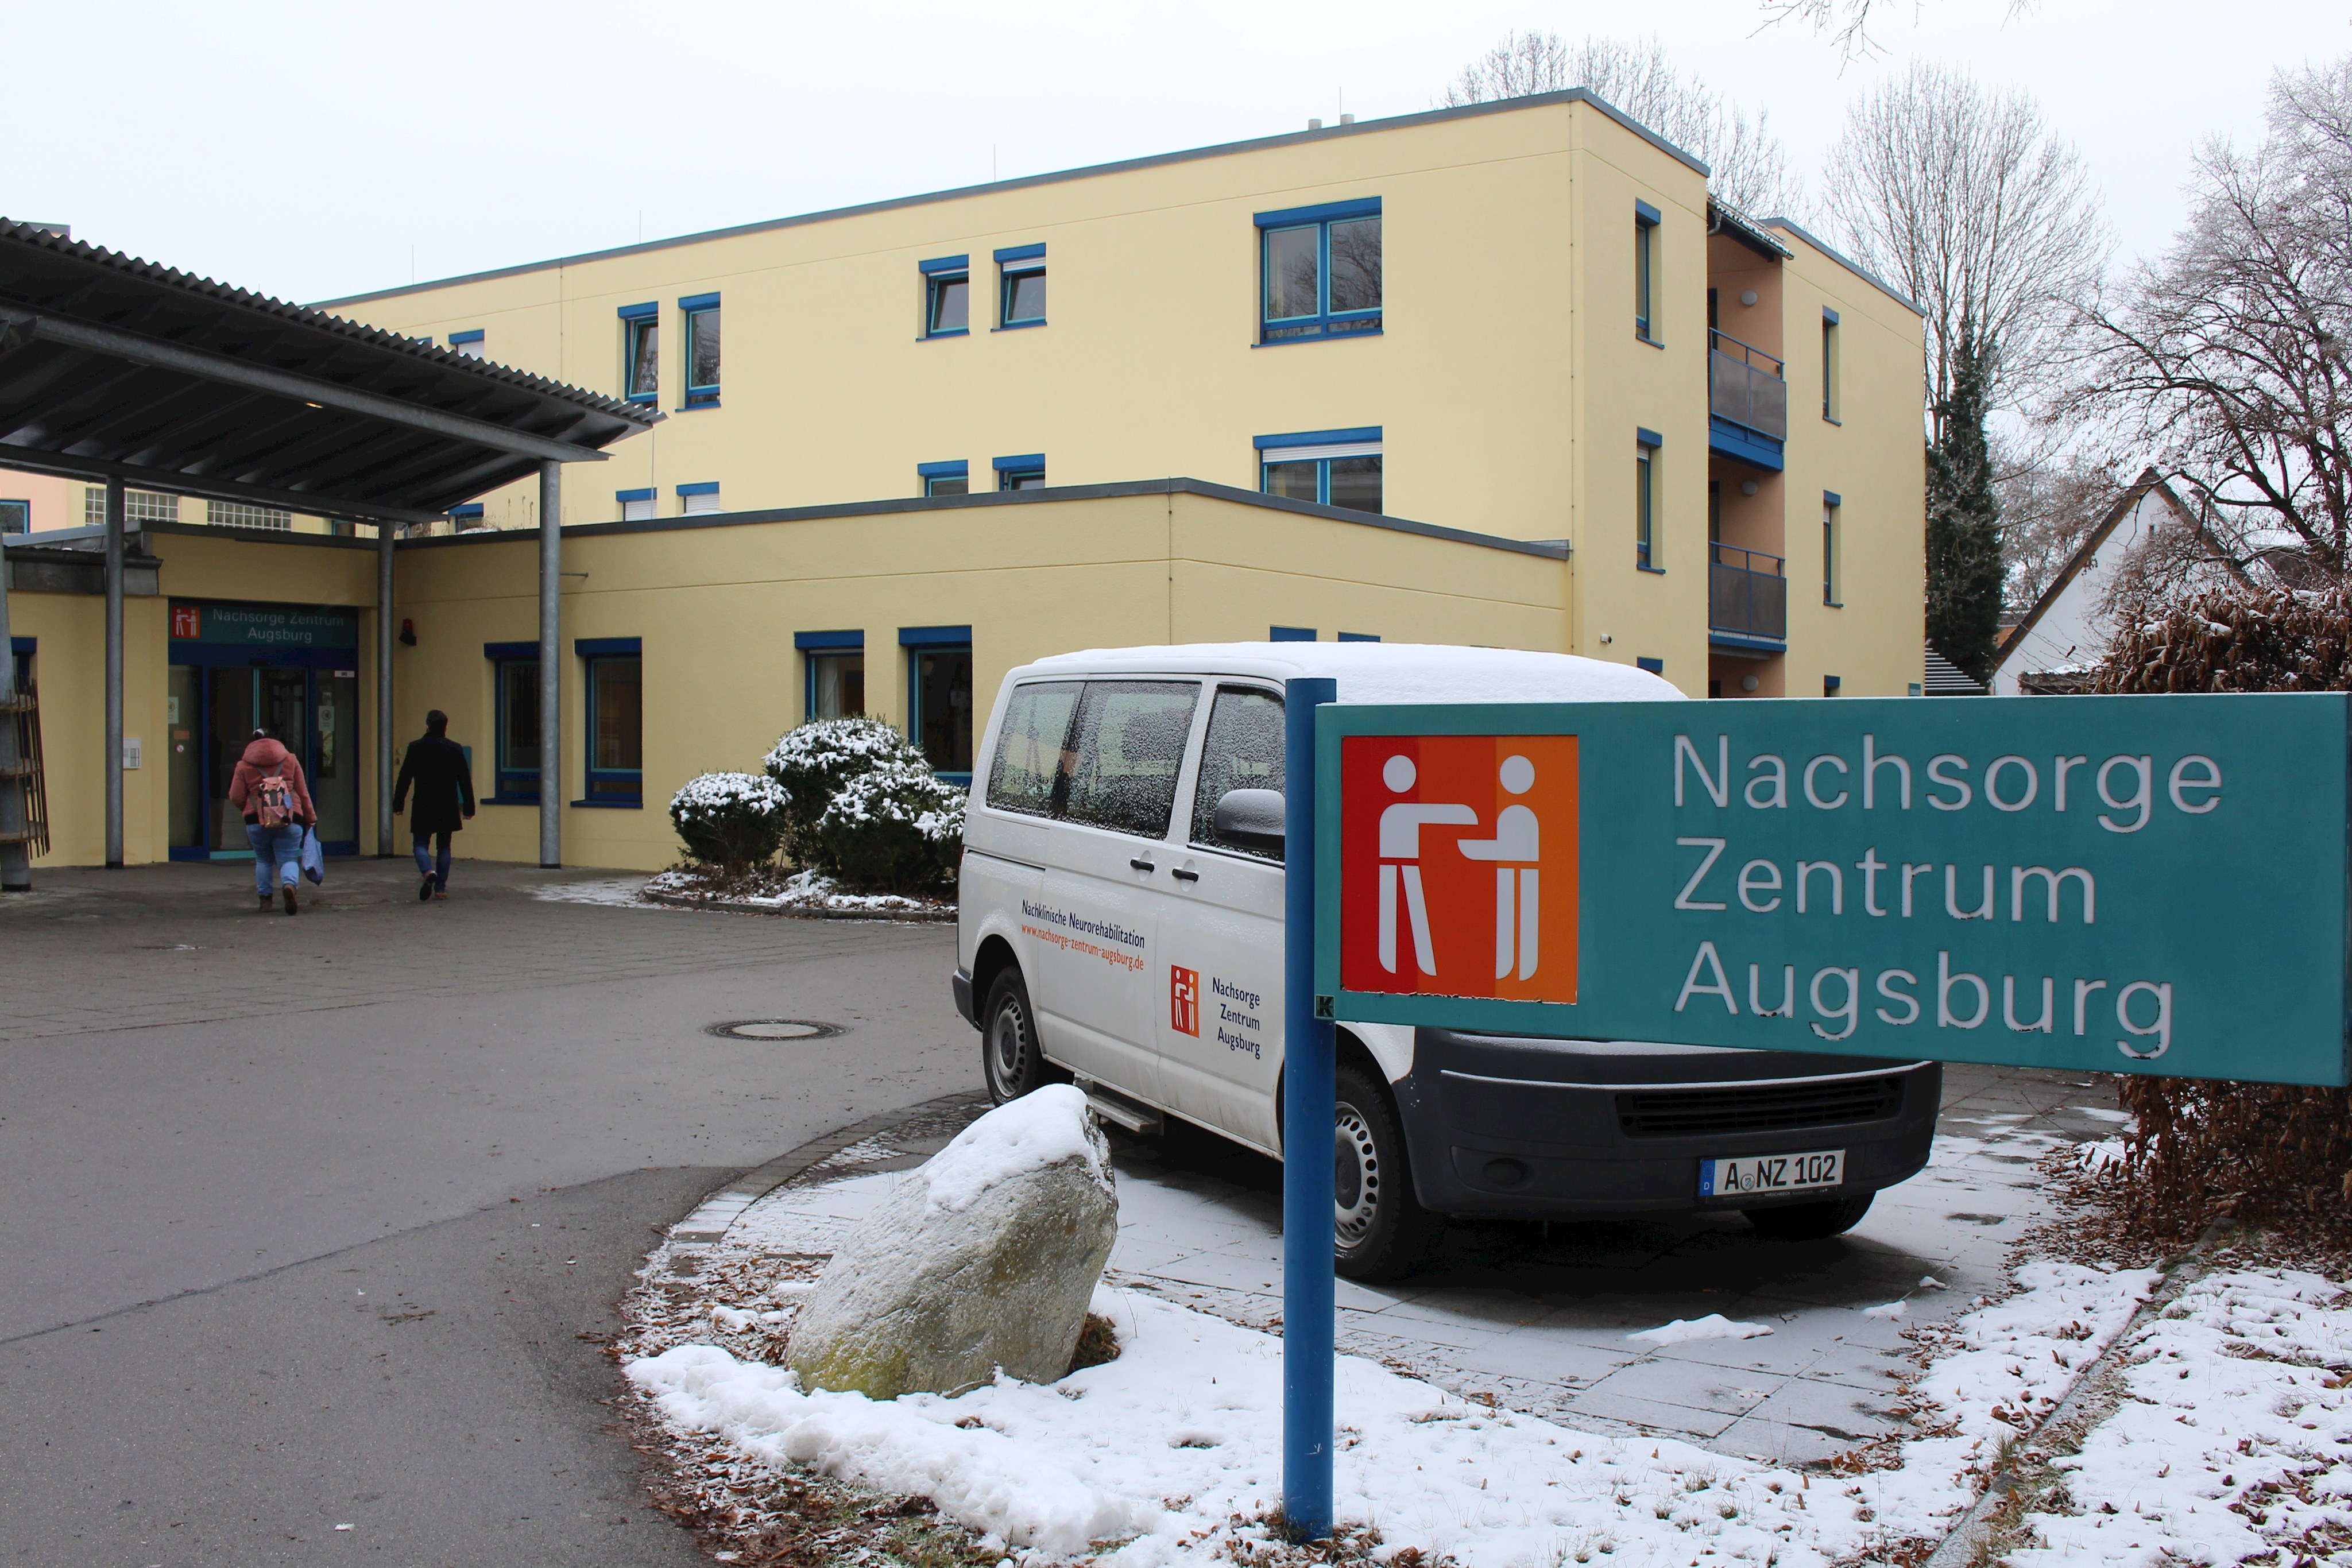 Im Nachsorge Zentrum Augsburg an der Frischstraße werden seit 23 Jahren Menschen mit erworbener Hirnschädigung rehabilitiert und betreut. Die schwere Erkrankung  kann durch einen Unfall, Schlaganfall, ein Schädel-Hirn-Trauma, eine Hirnblutung oder durch Sauerstoffmangel passiert sein.